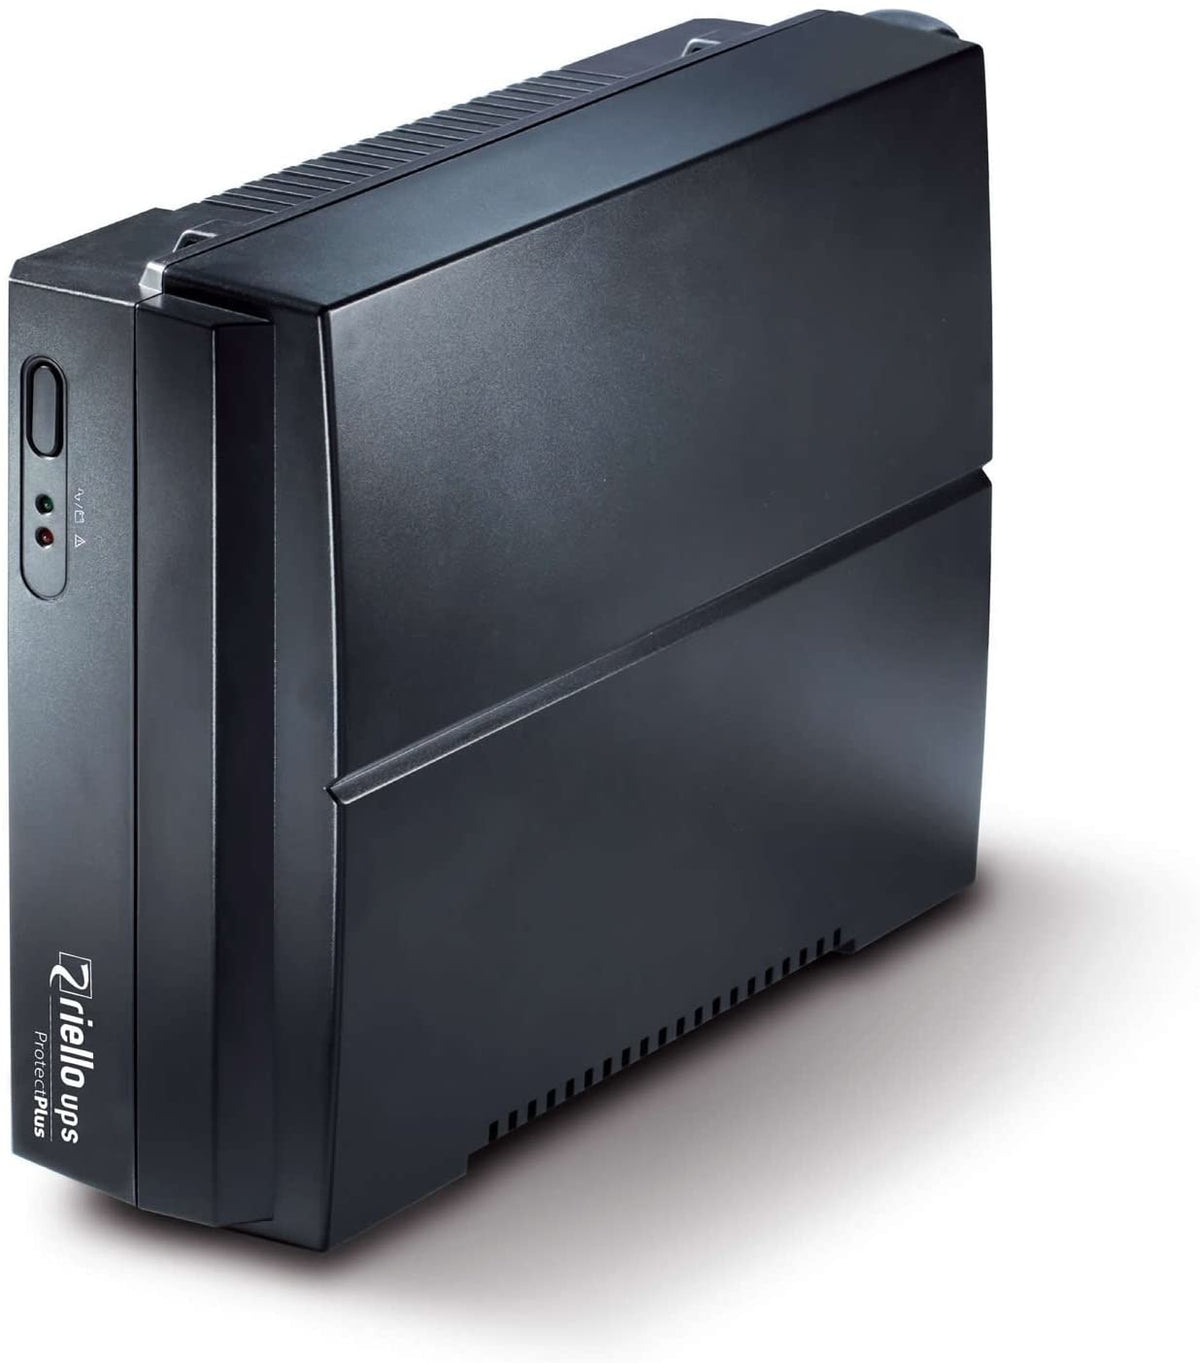 Riello UPS Protect Plus PRP 850 - UPS - AC 220-240 V - 480 Watt - 850 VA - output connectors: 2 - black